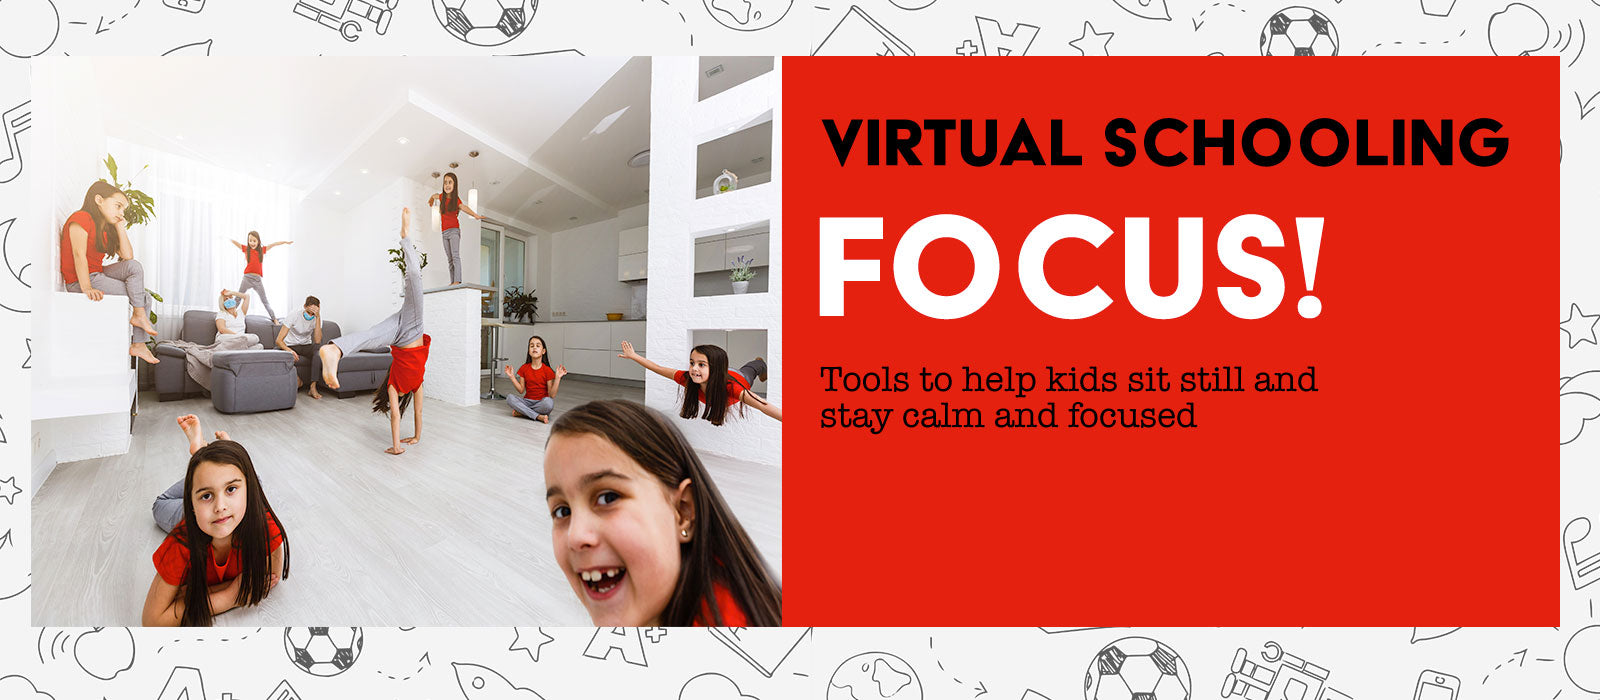 Virtual Schooling: Focus